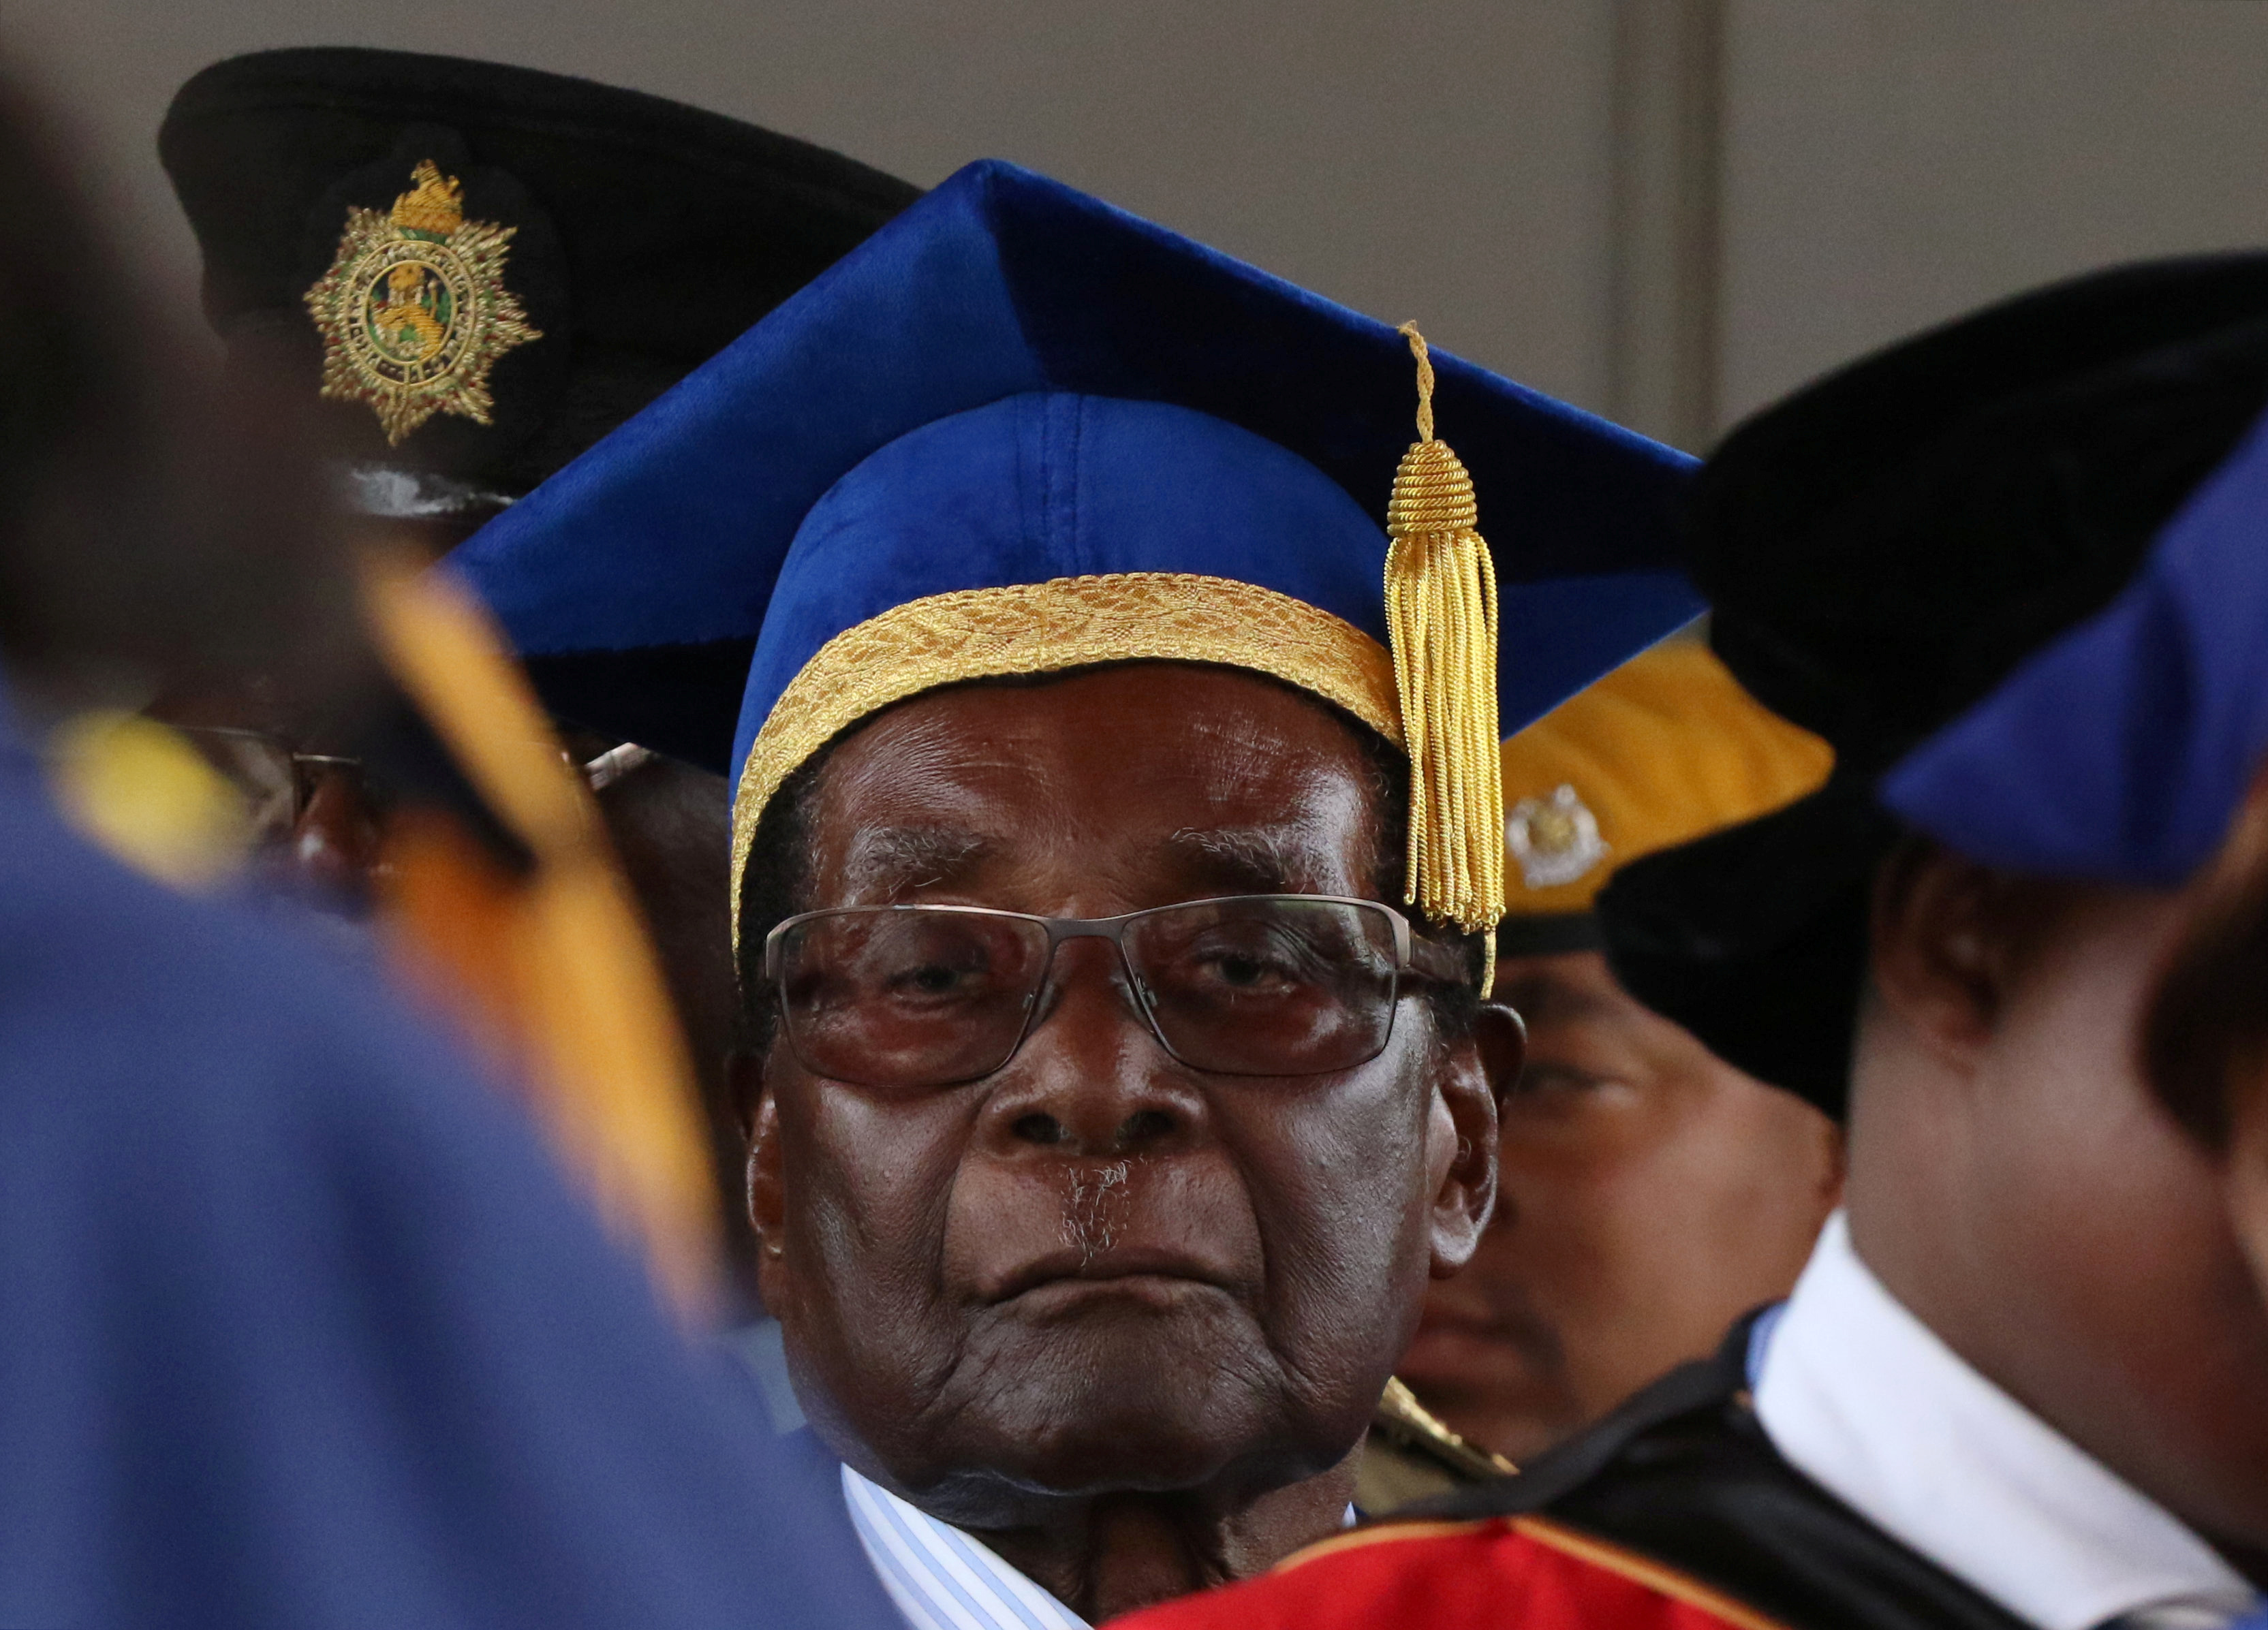 رئيس زيمبابوى يحضر حفل تخرج دفعة جامعية